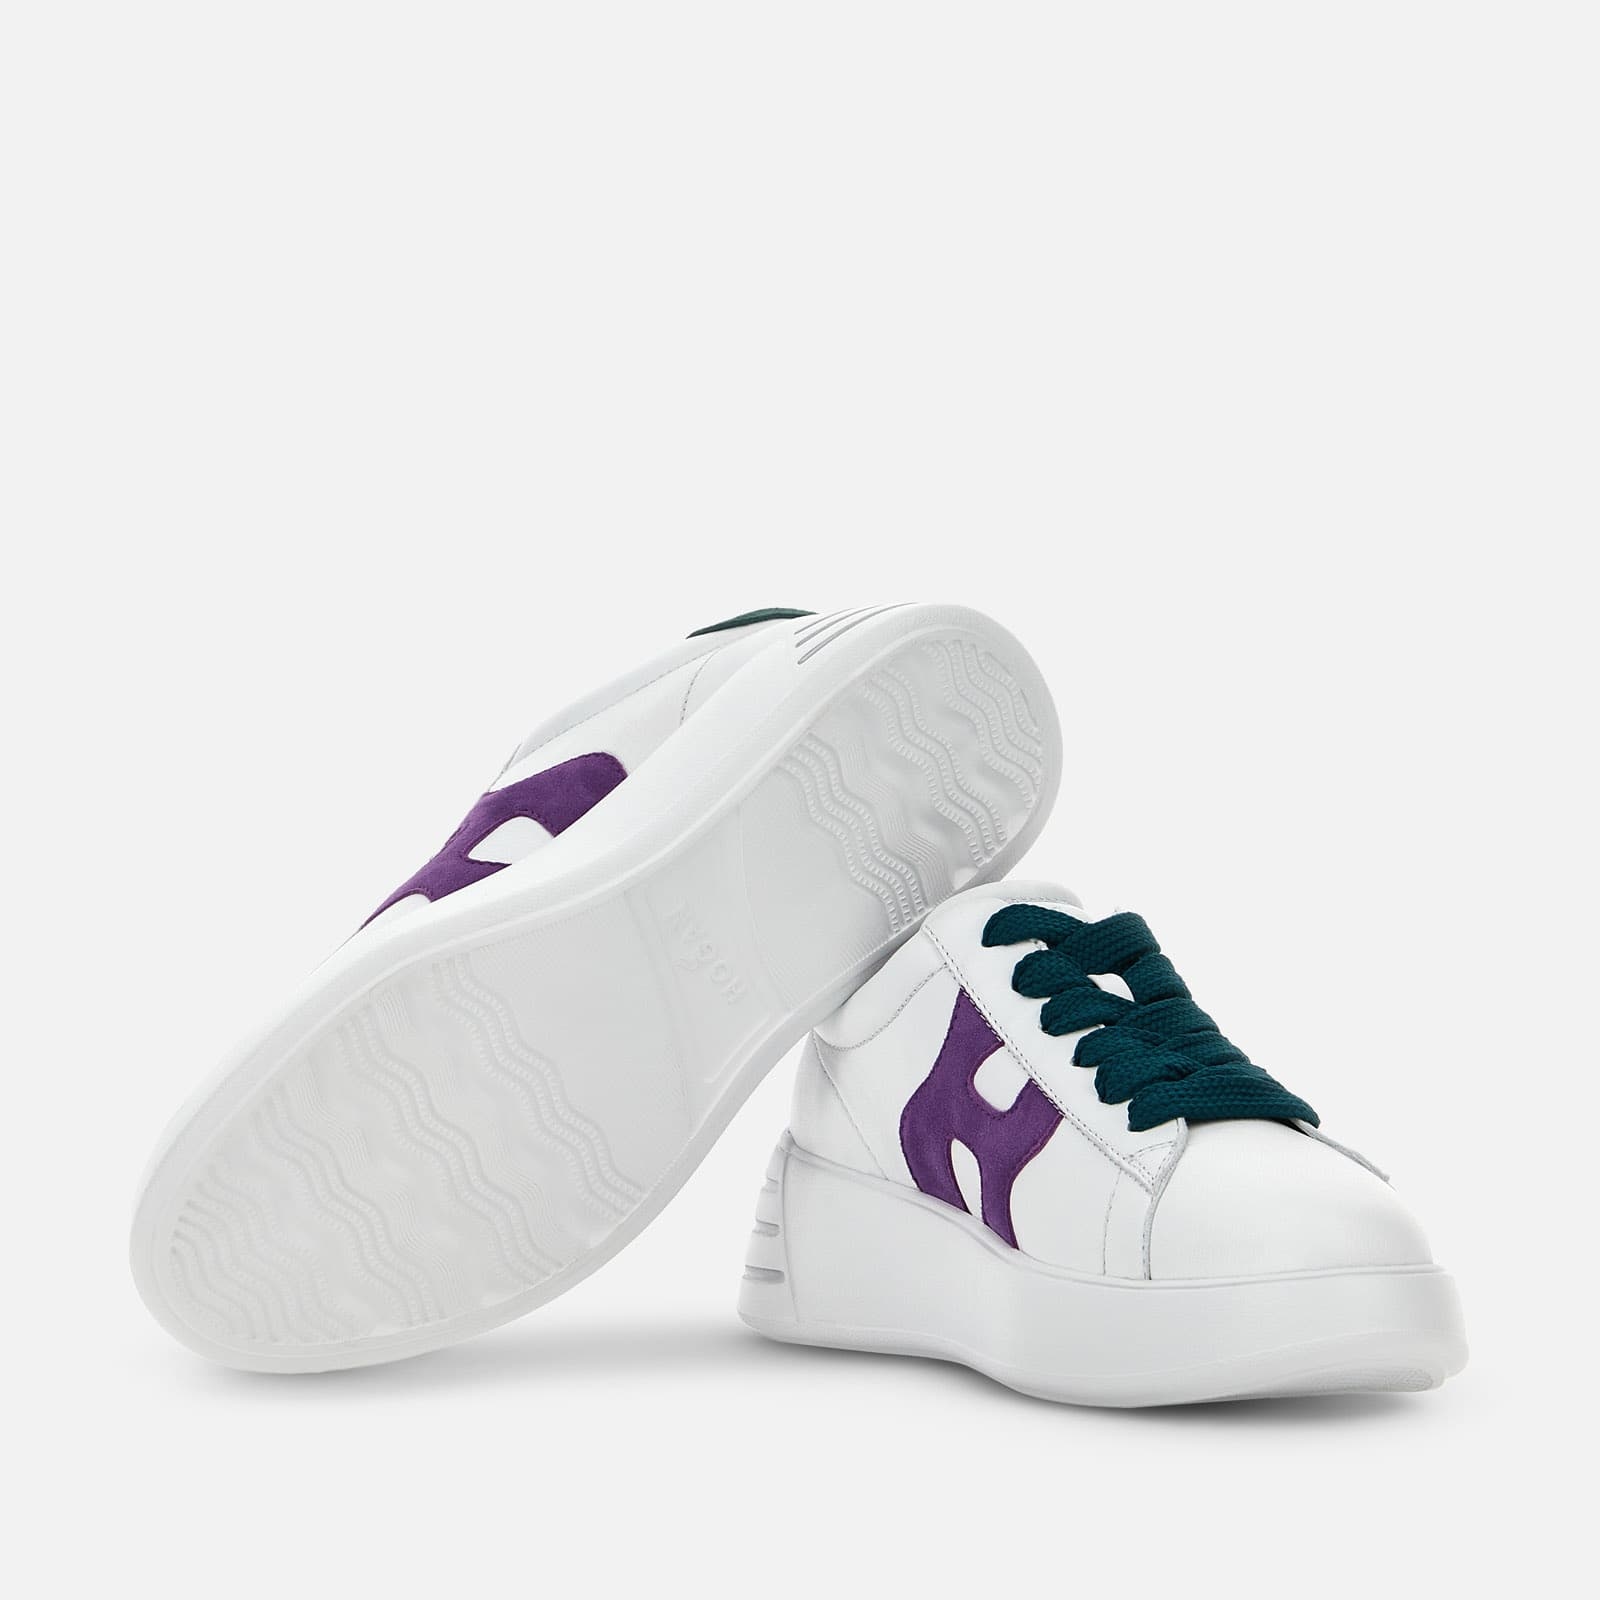 Hogan H641 low-top sneakers - Purple